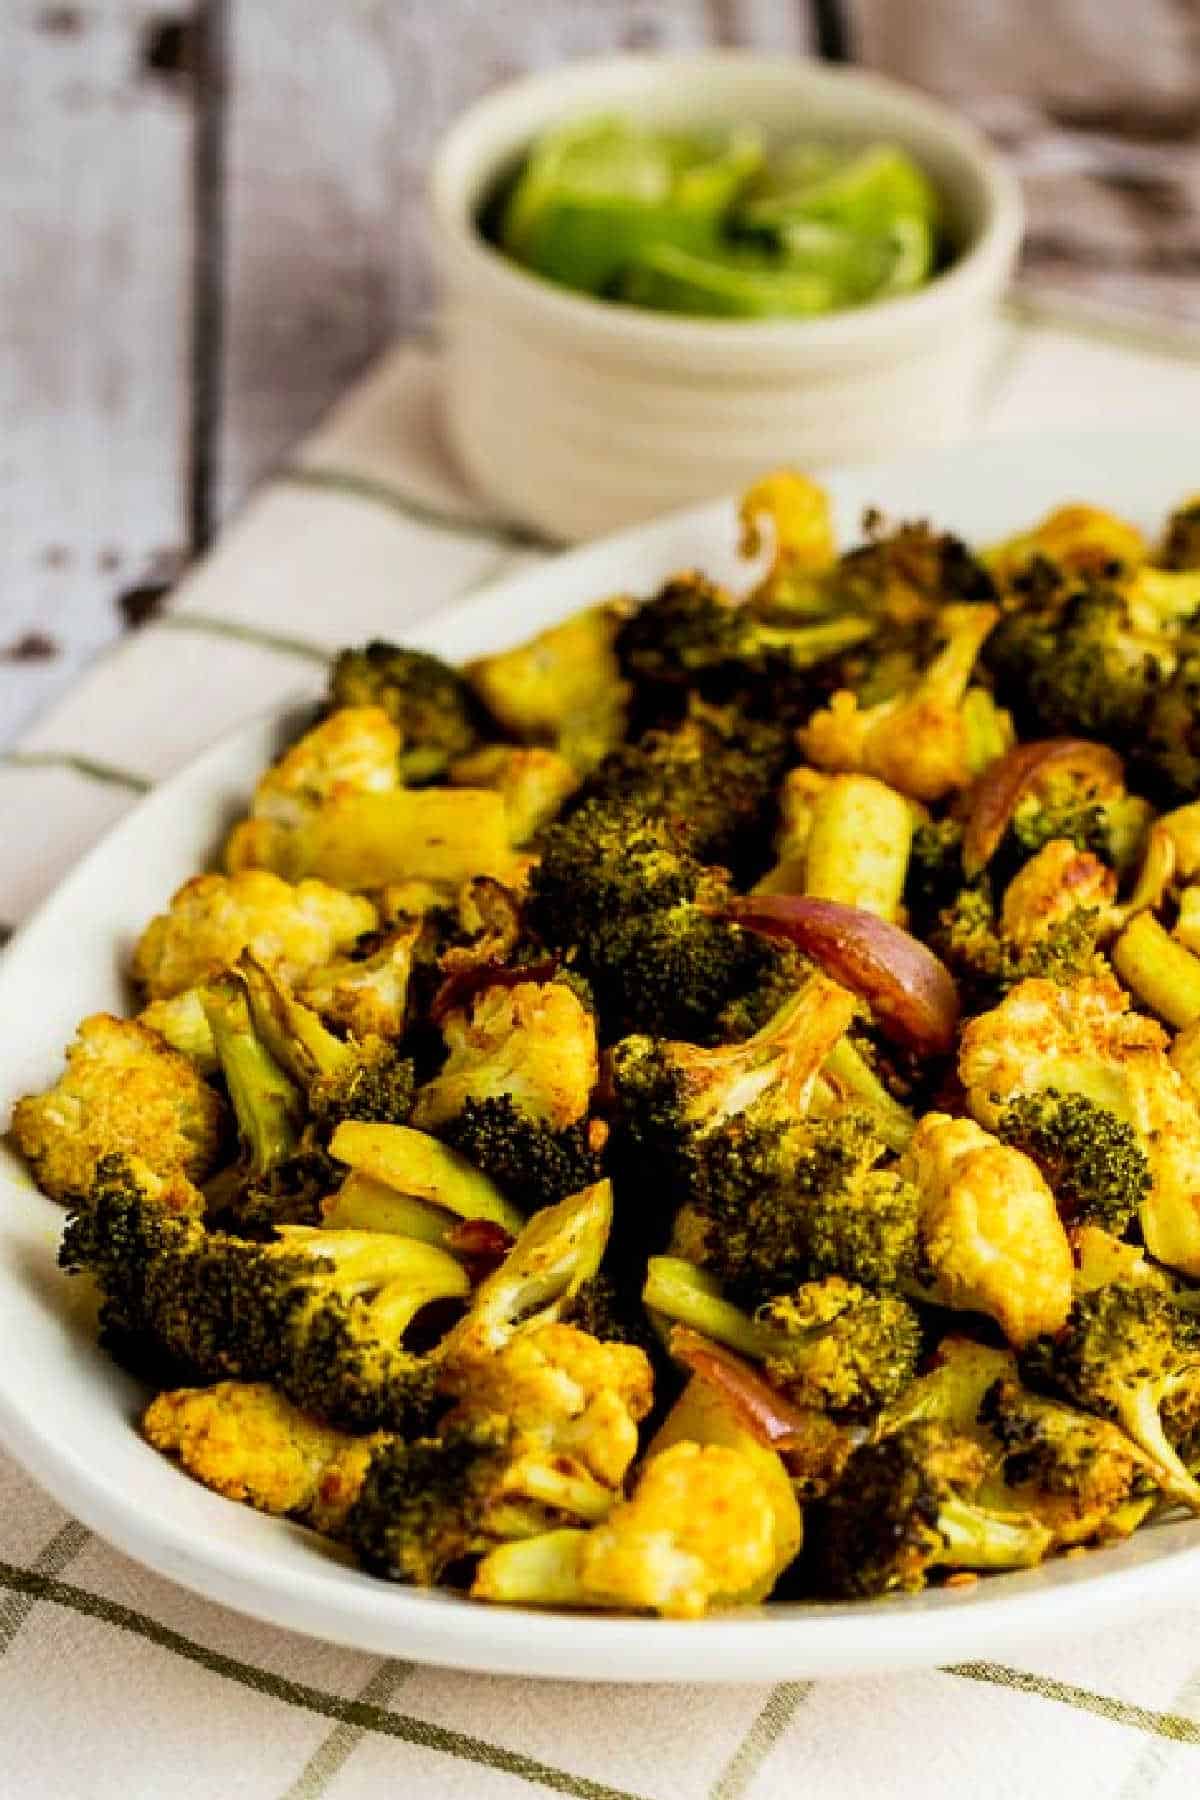 Broccoli arrostiti e cavolfiore mostrati sul piatto da portata con lime sullo sfondo